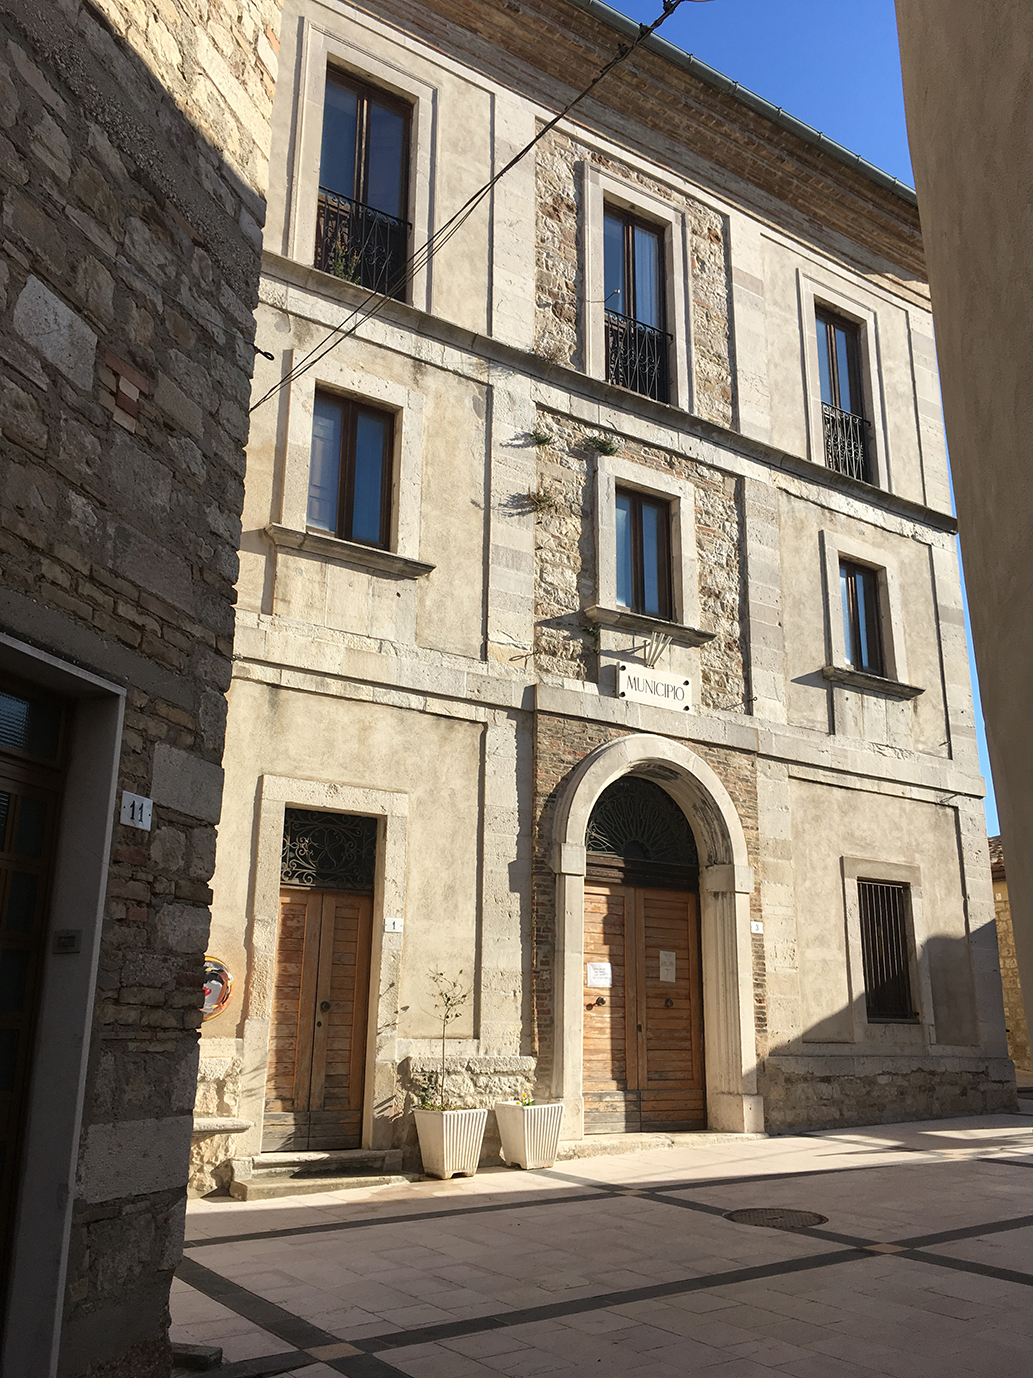 Palazzo Procaccini-Piscicelli (palazzo, signorile) - Casalanguida (CH) 